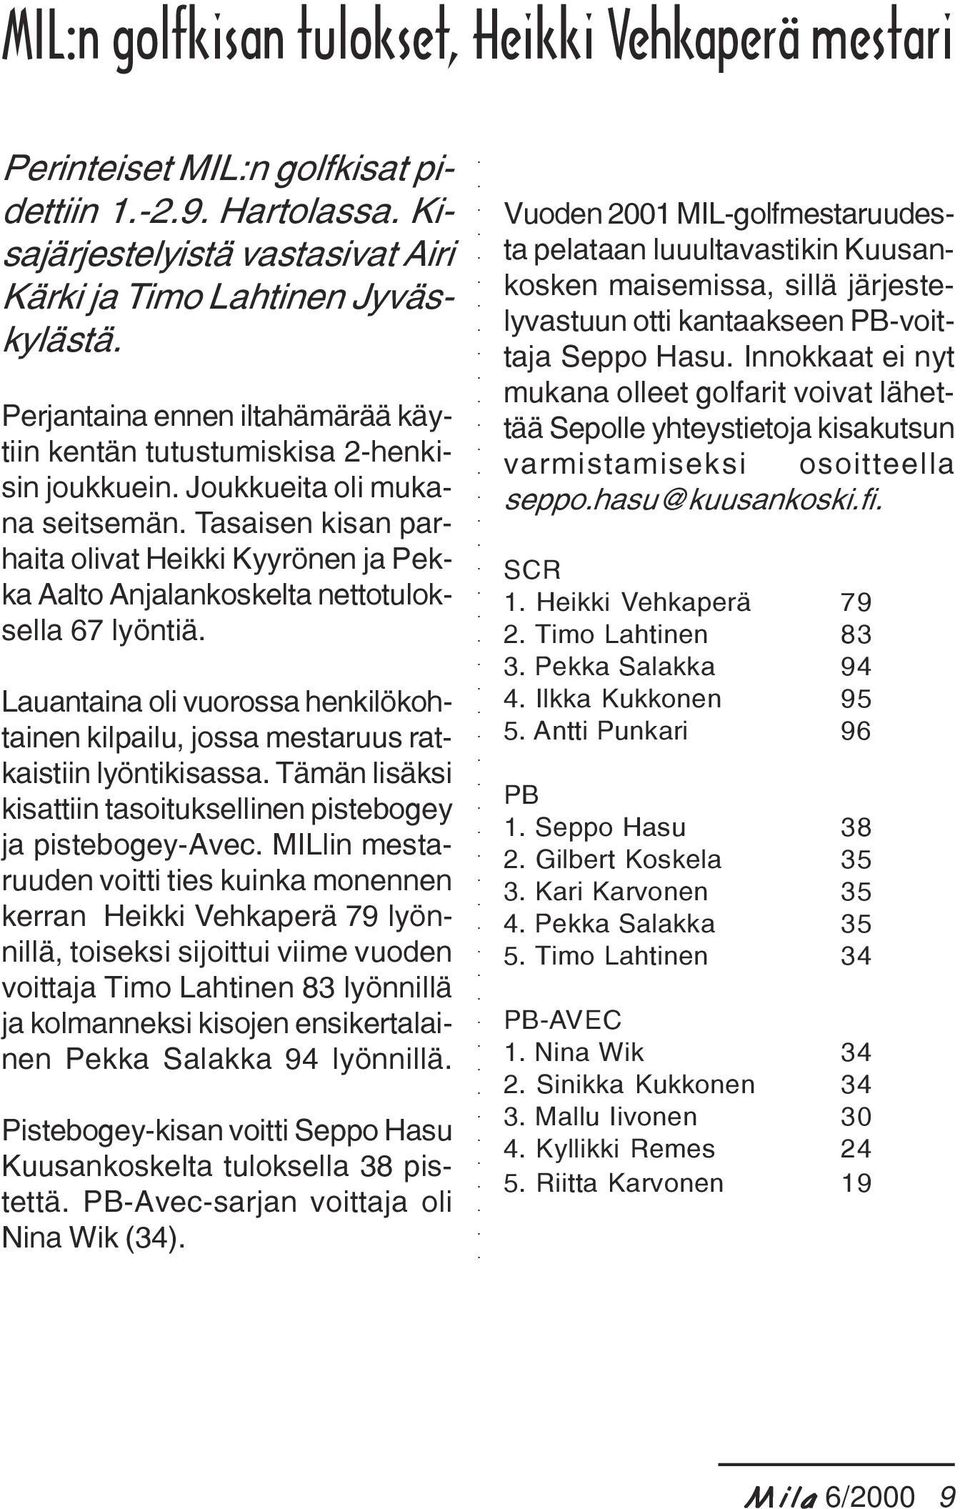 Tasaisen kisan parhaita olivat Heikki Kyyrönen ja Pekka Aalto Anjalankoskelta nettotuloksella 67 lyöntiä. Lauantaina oli vuorossa henkilökohtainen kilpailu, jossa mestaruus ratkaistiin lyöntikisassa.